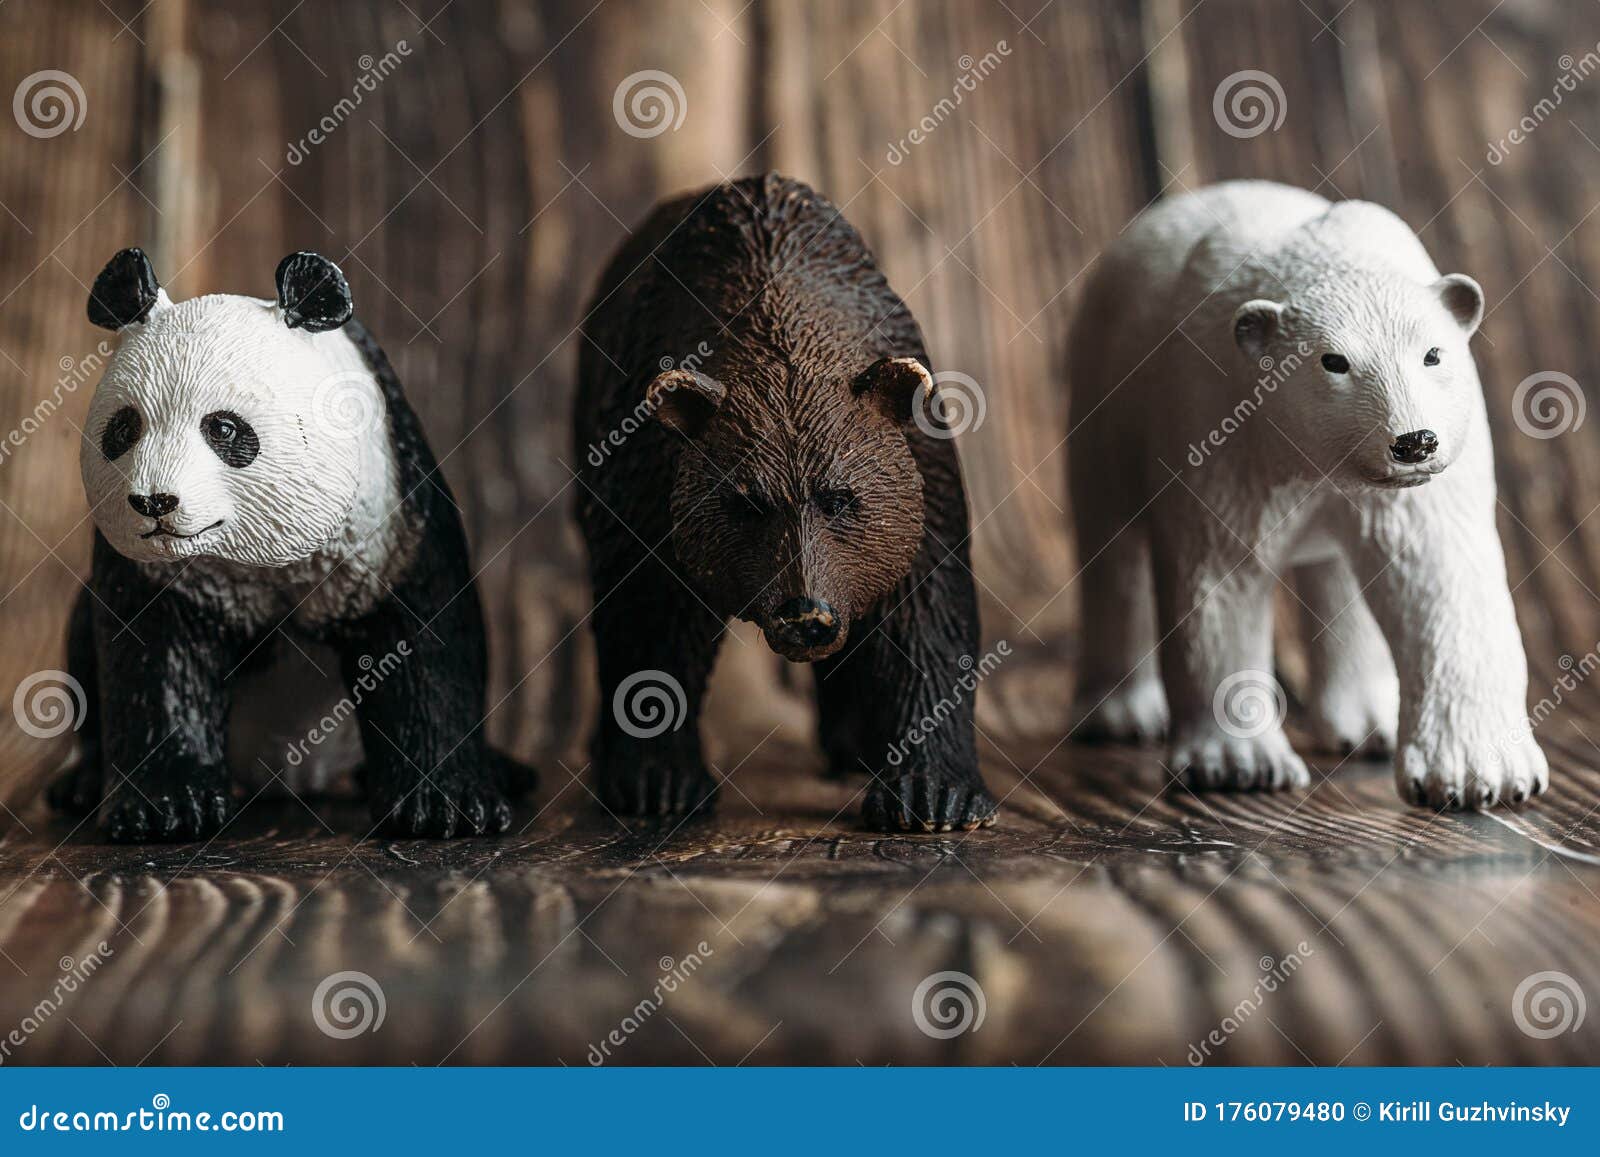 Pandabears world